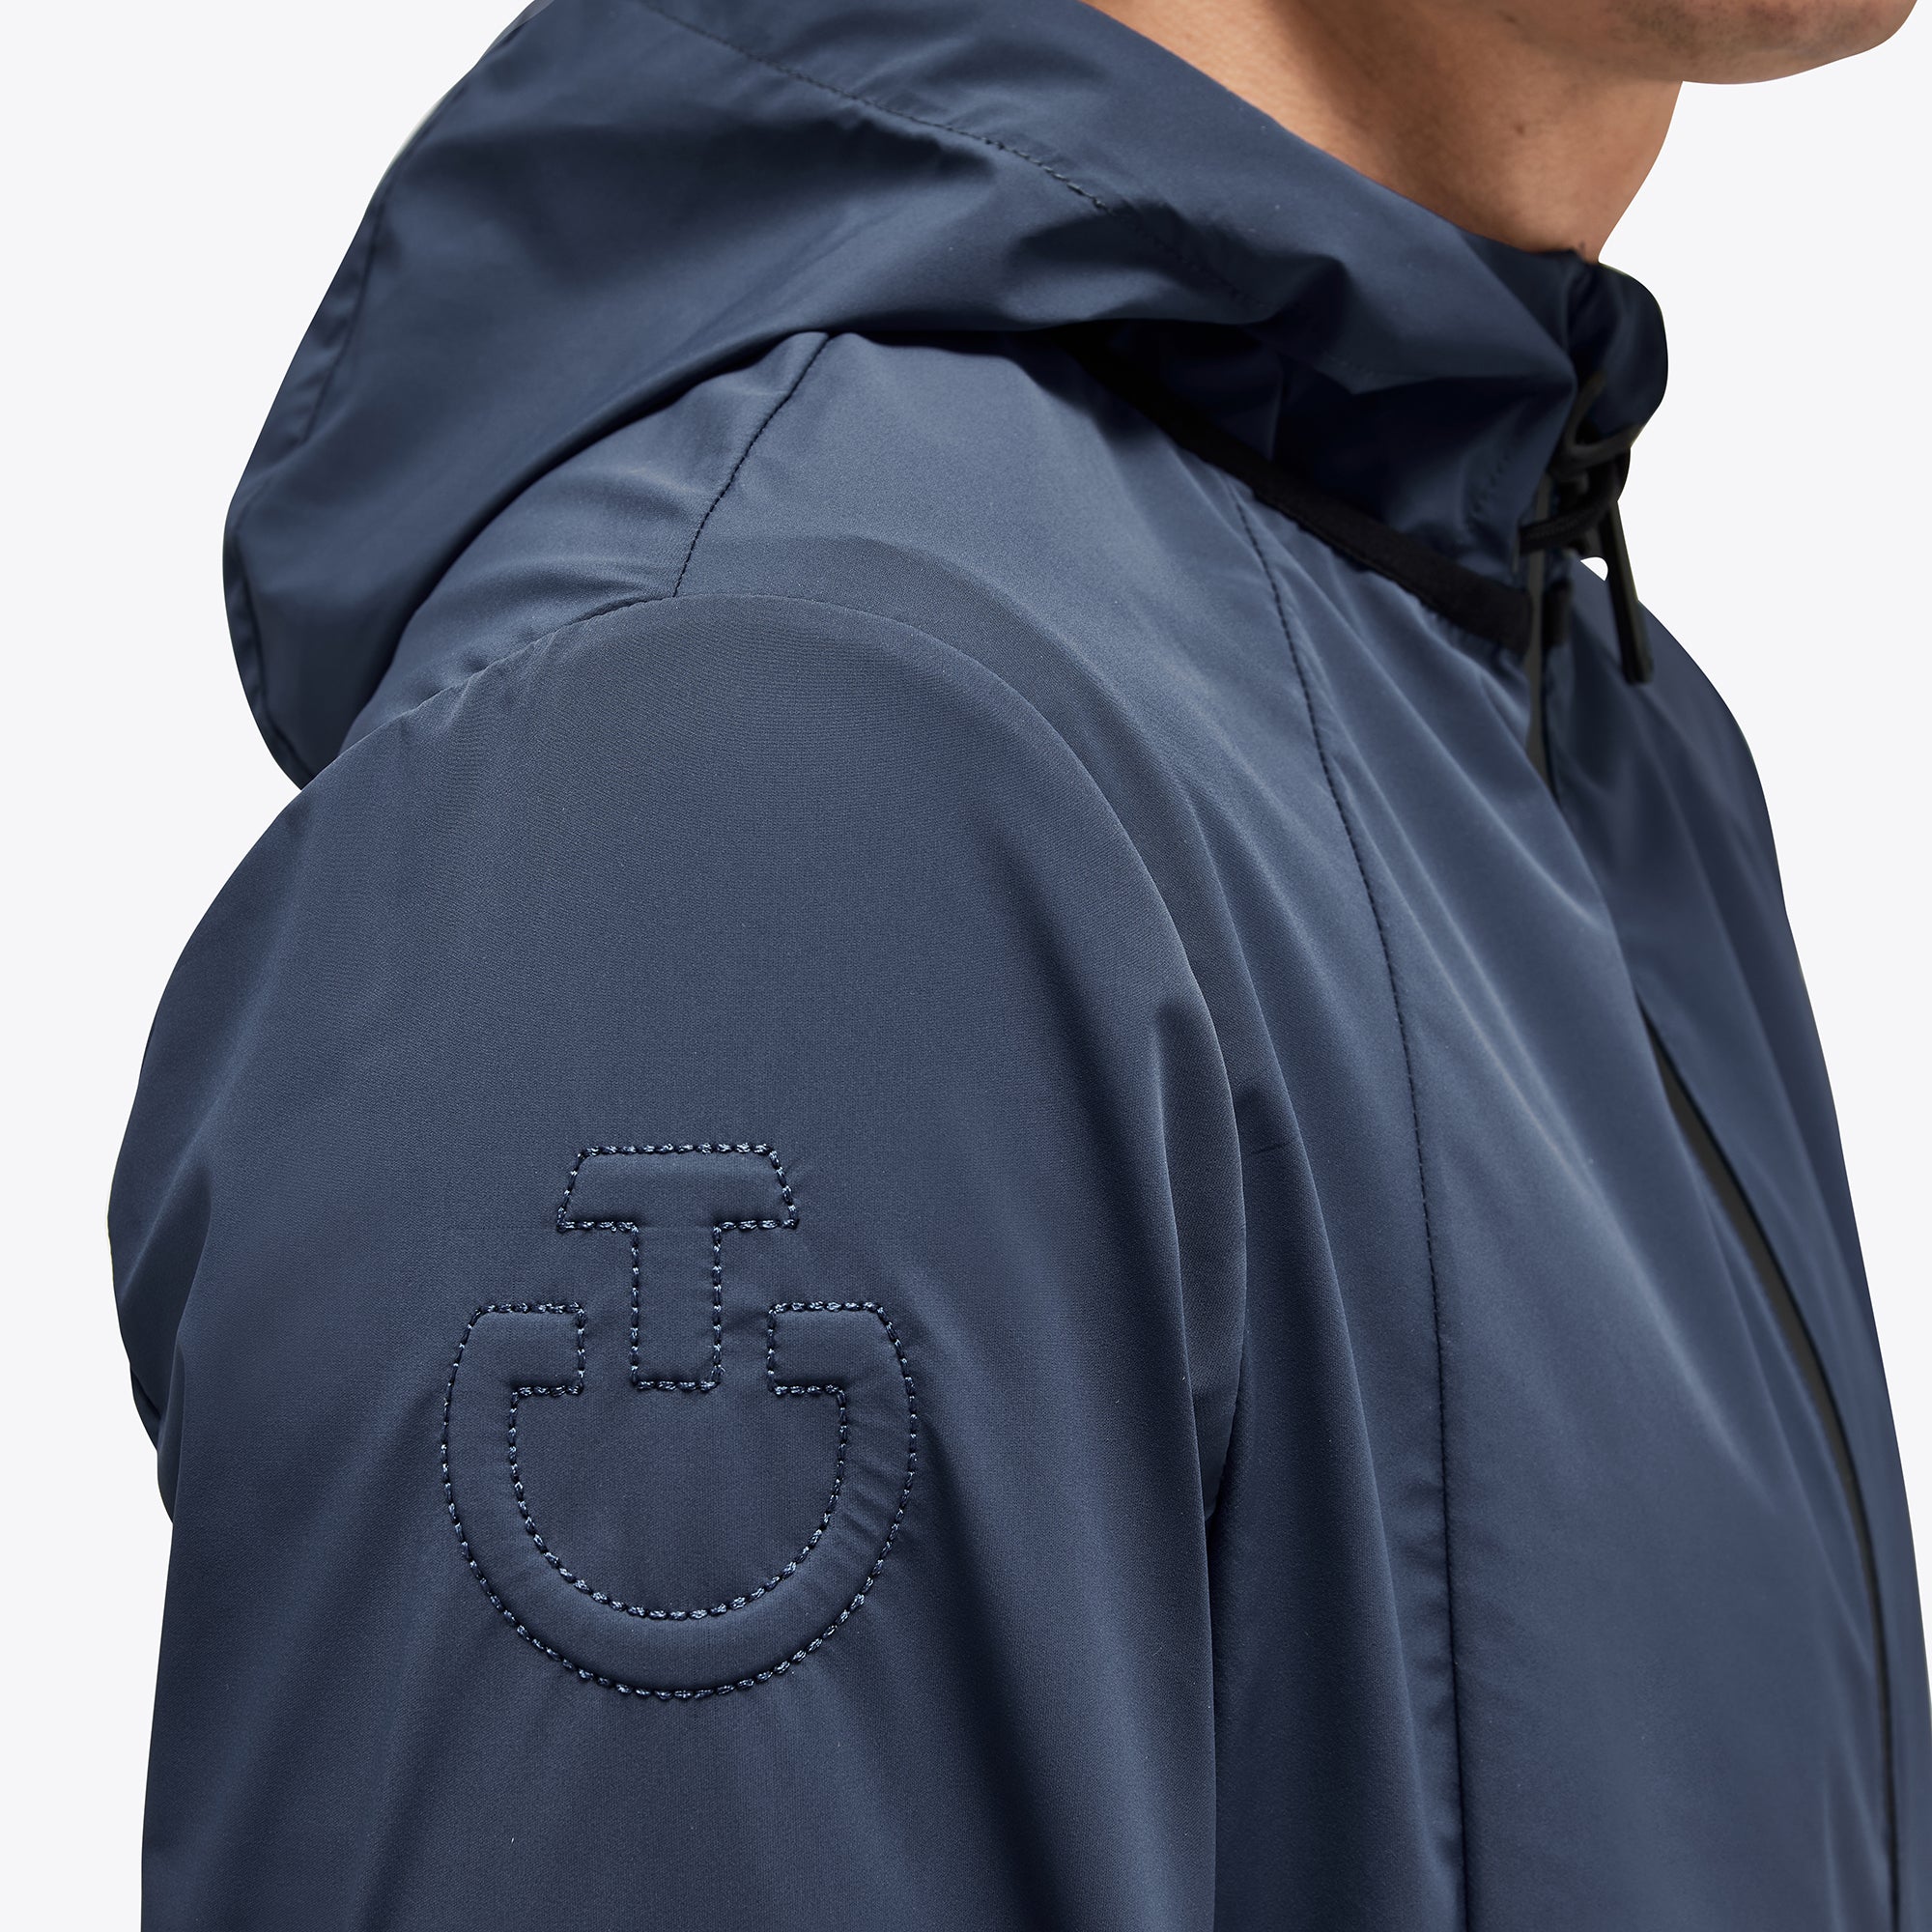 Die Cavalleria Toscana Waterproof Hoden Jacket GIU278 ist nicht nur funktional, sondern auch stilvoll. Die Farbe ist ein klassisches Navyblau und das Cavalleria Toscana-Logo ist dezent auf der Brust platziert. Diese Jacke ist perfekt für den anspruchsvollen Reiter, der sowohl Funktionalität als auch Stil schätzt.